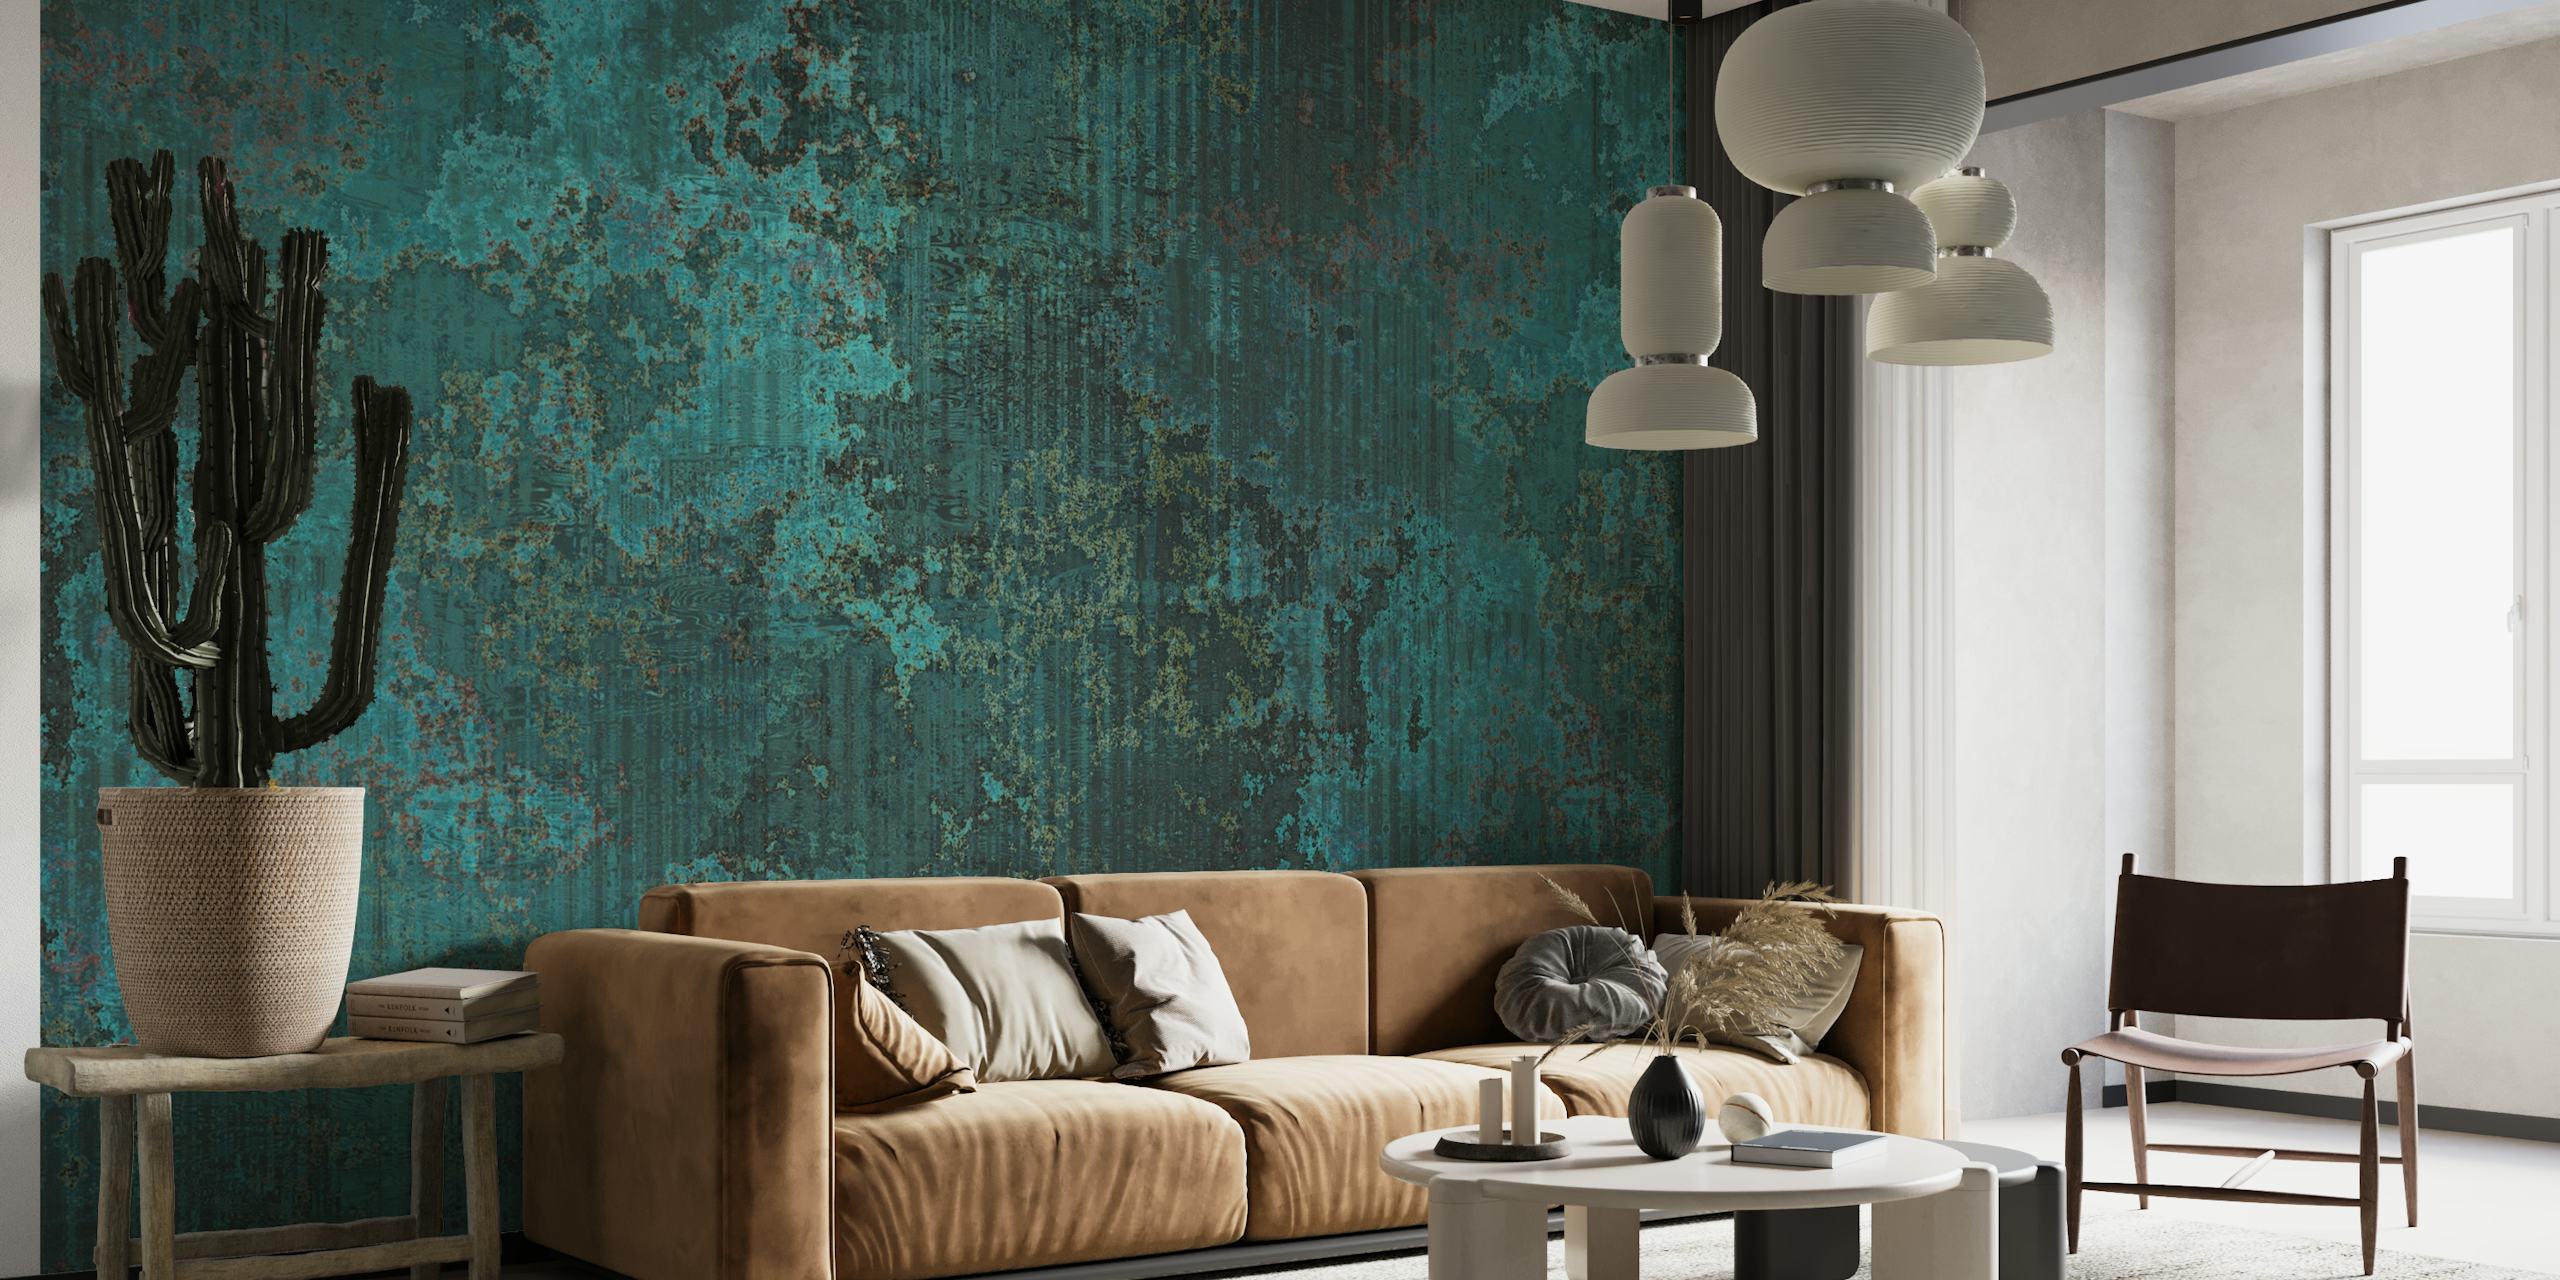 Fotomural de pared con textura de metal corroído de color verde azulado oscuro con una mezcla de elegancia rústica.